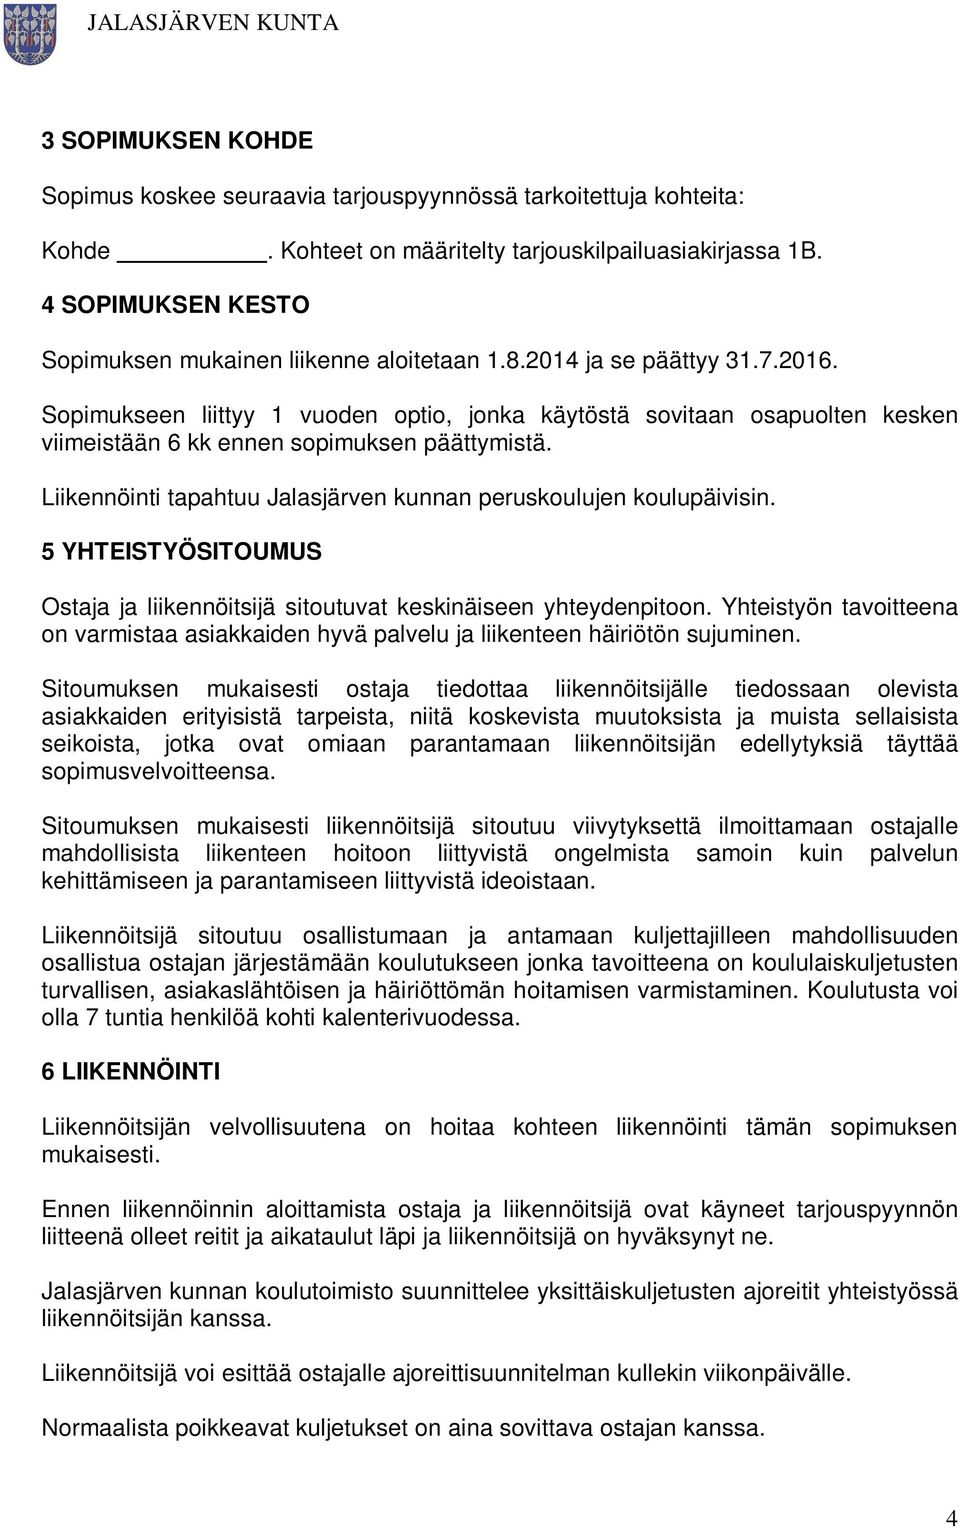 Sopimukseen liittyy 1 vuoden optio, jonka käytöstä sovitaan osapuolten kesken viimeistään 6 kk ennen sopimuksen päättymistä. Liikennöinti tapahtuu Jalasjärven kunnan peruskoulujen koulupäivisin.